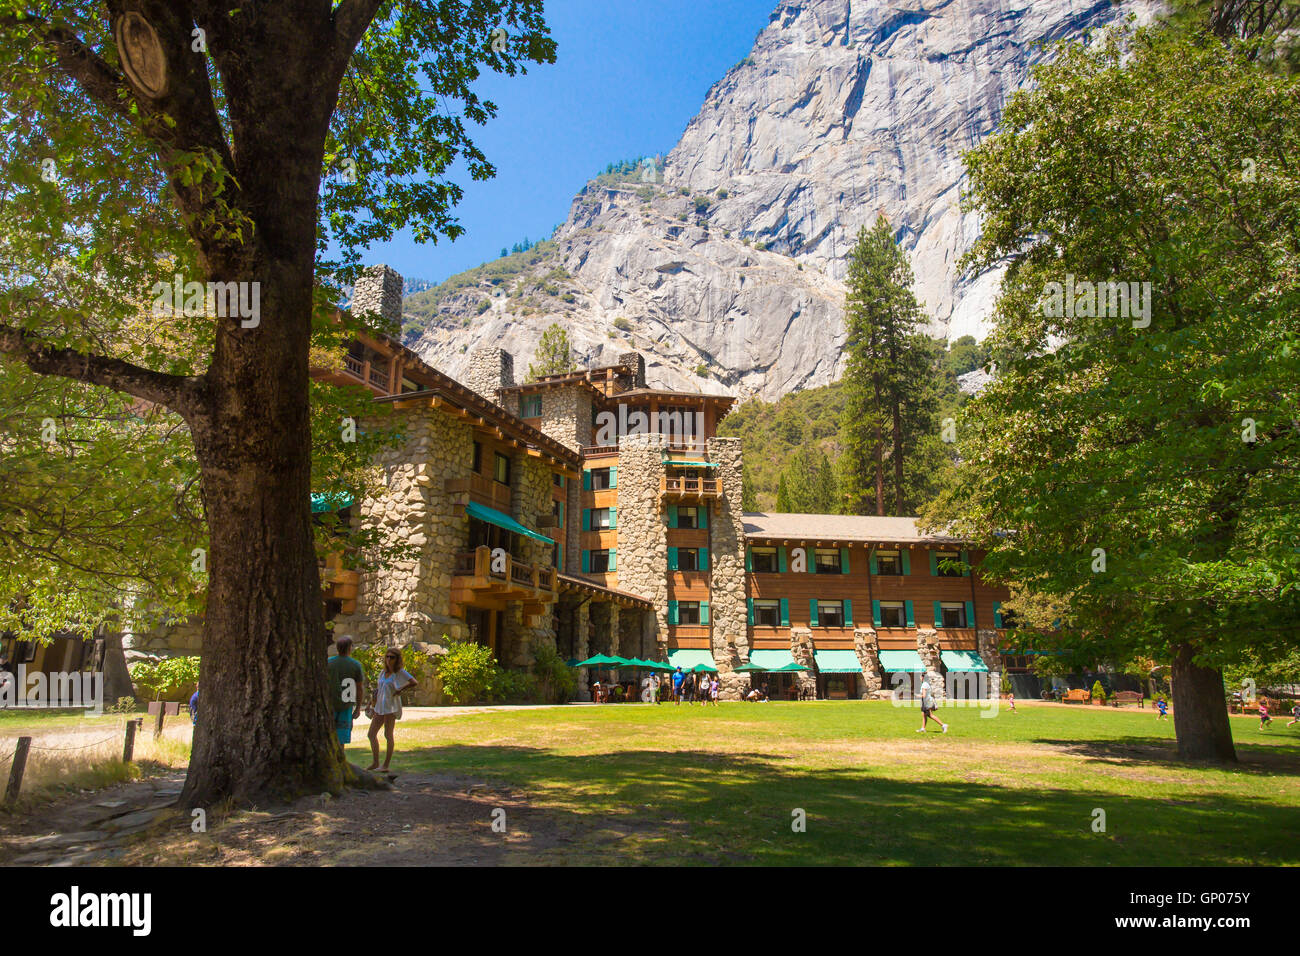 YOSEMITE NATIONAL PARK, Californie - 3 août, 2016 : voir l'historique de l'hôtel Yosemite majestueux, anciennement connu sous le nom de Ahwahnee Hotel à Yosem Banque D'Images